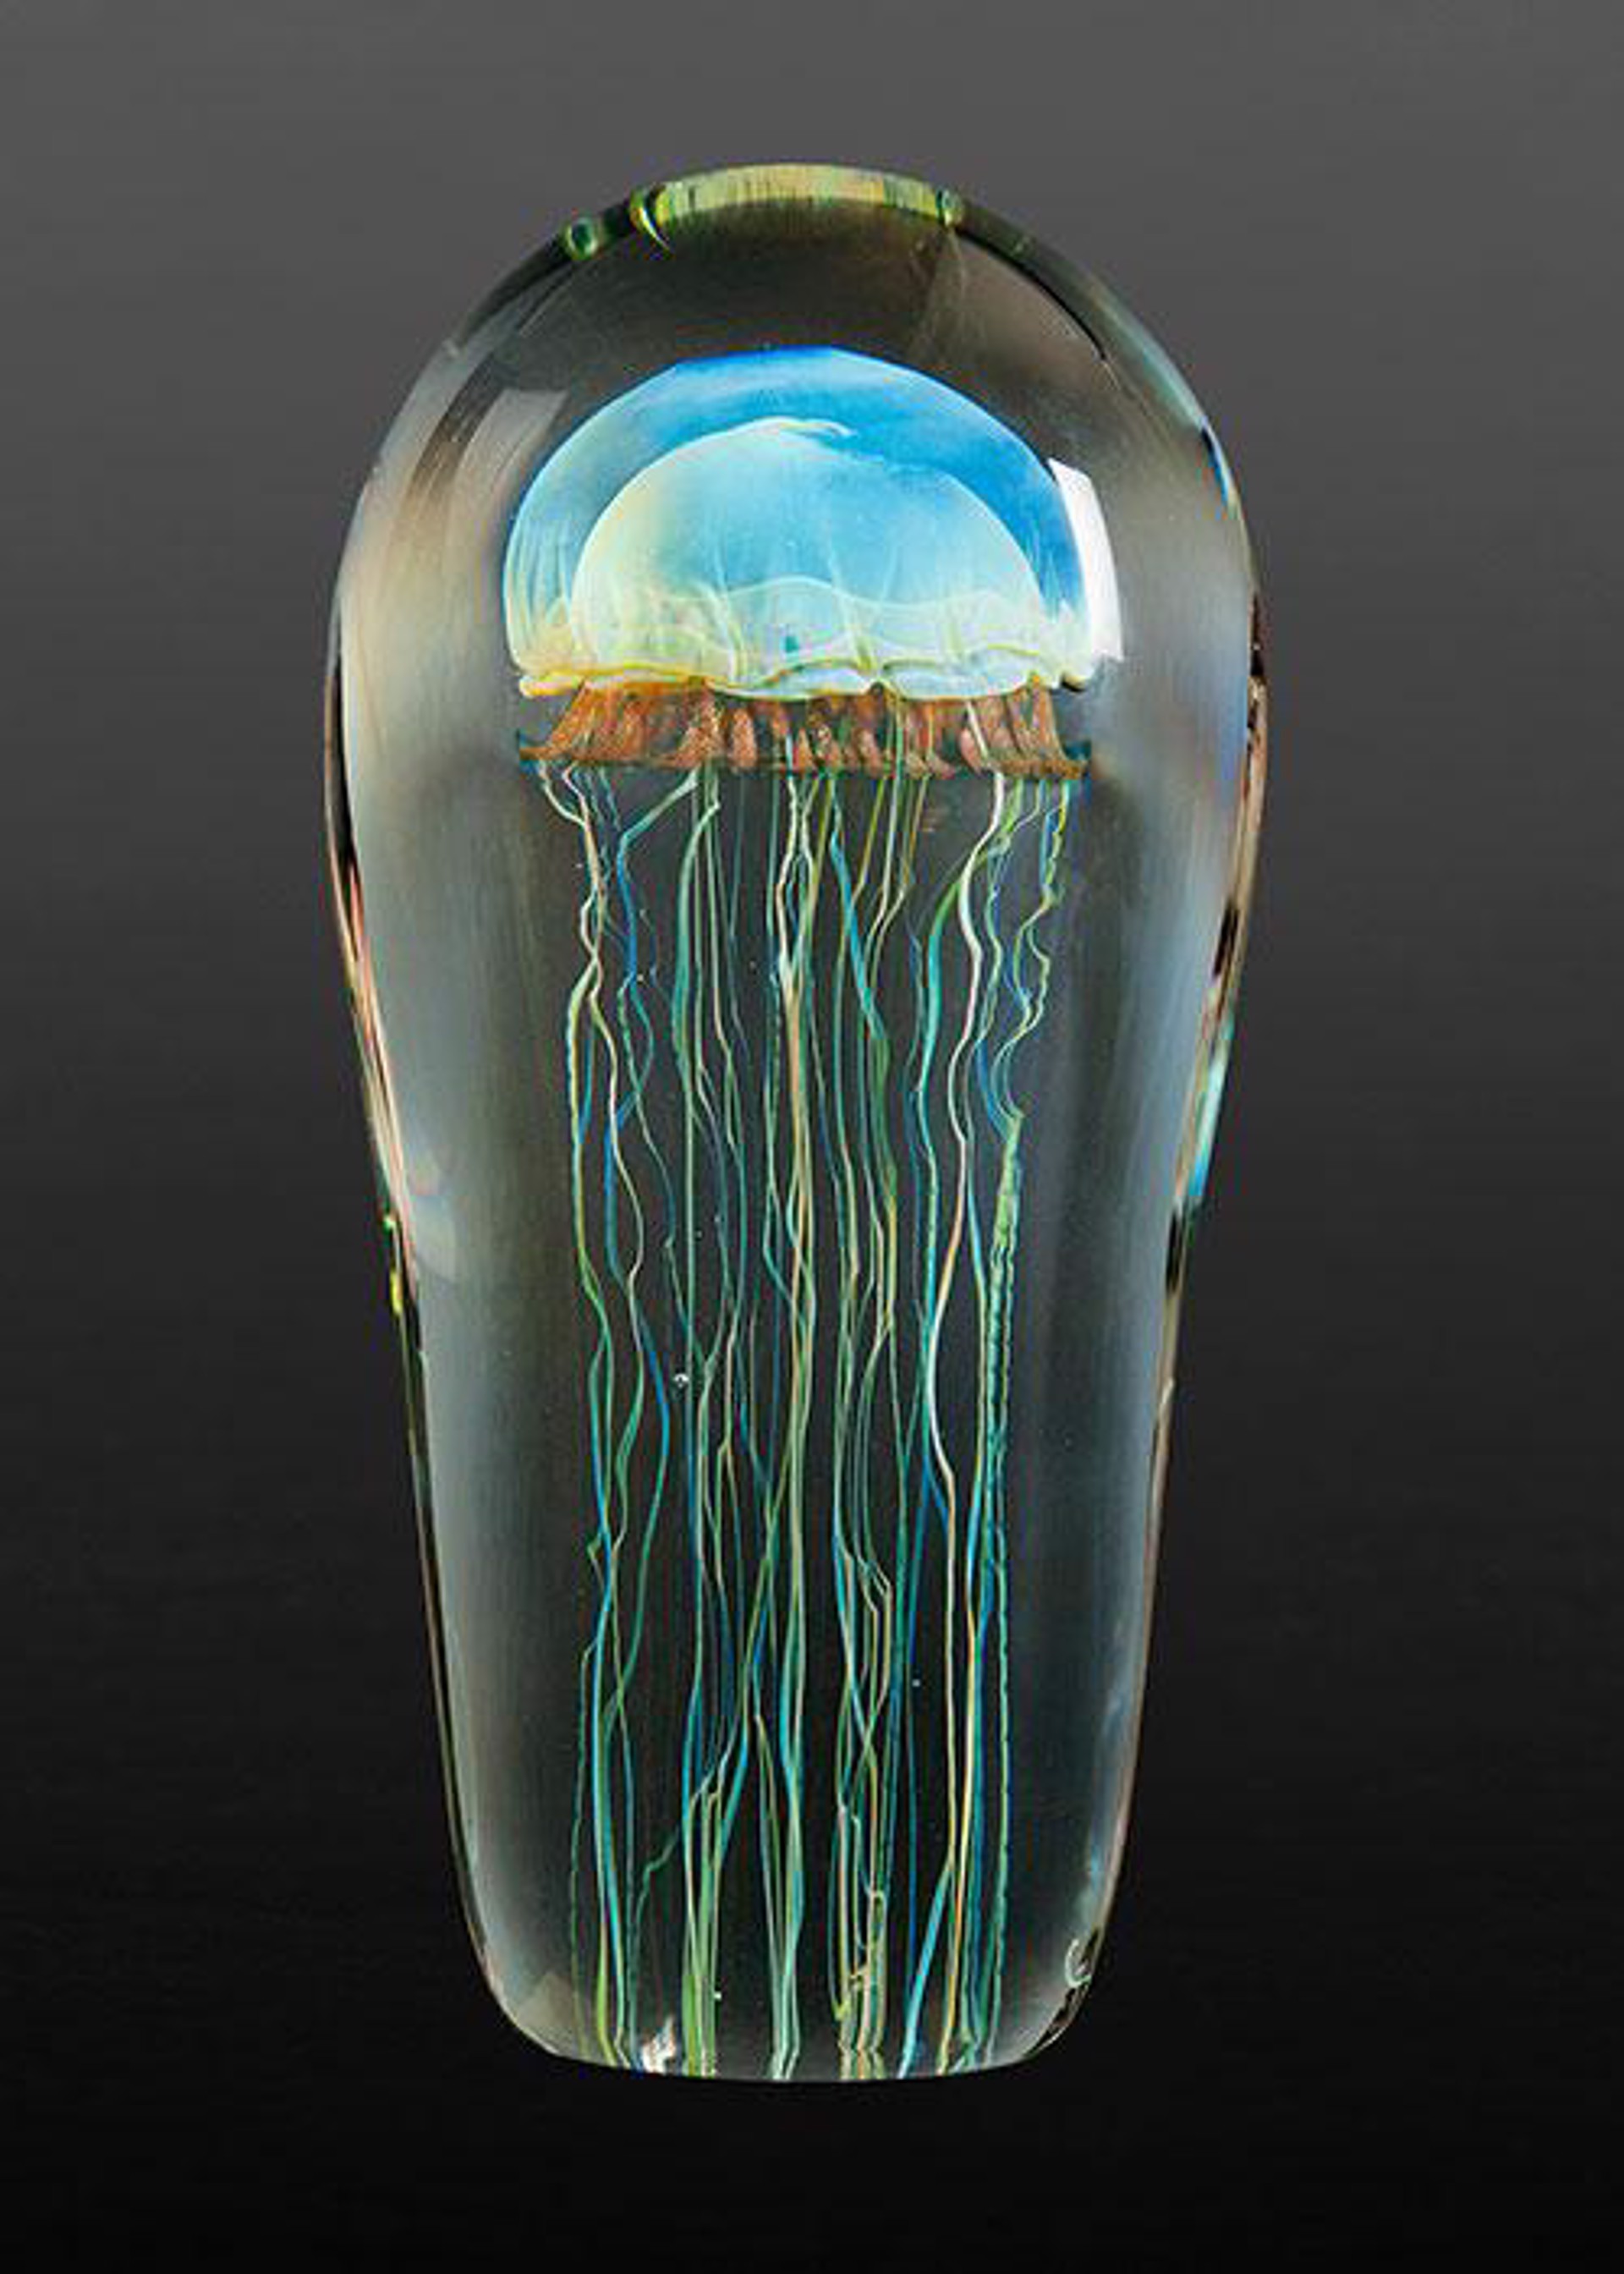 Moon Jellyfish 6" by RICHARD SATAVA